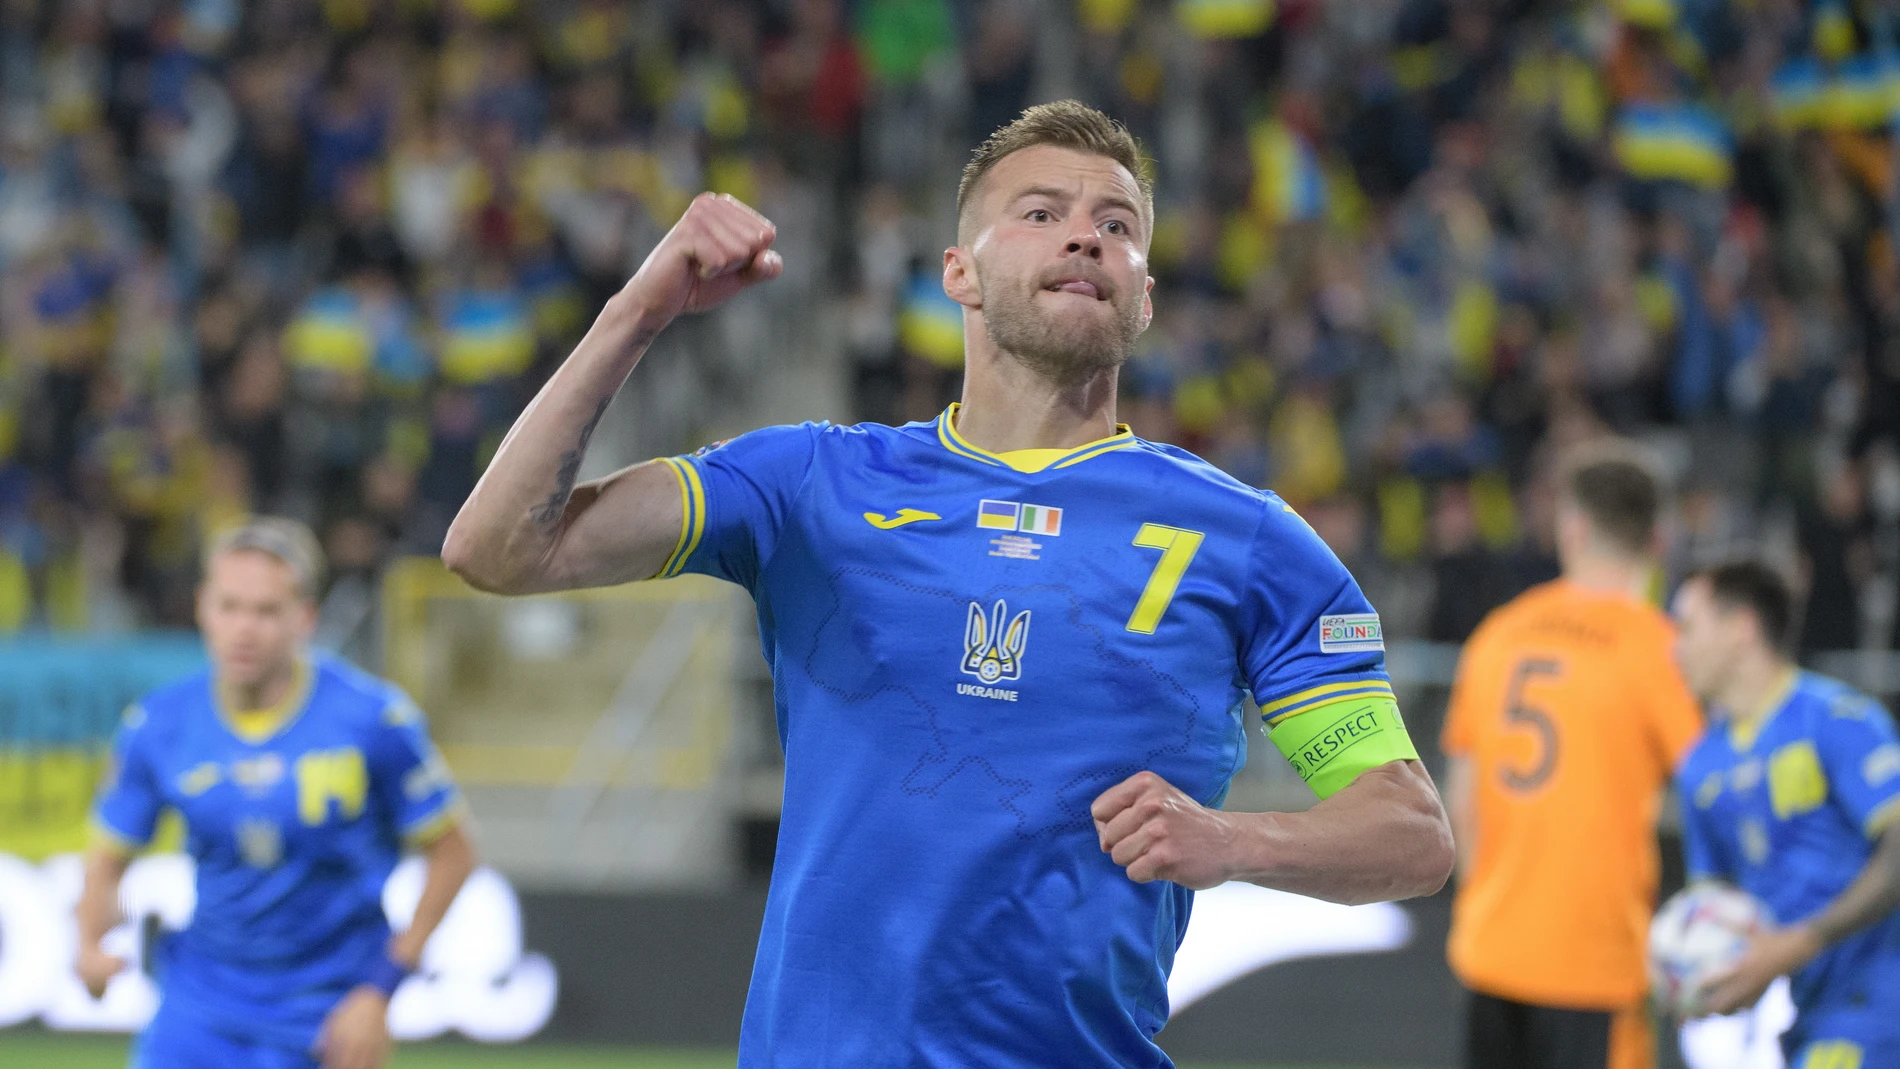 El capitán de la selección ucraniana durante un partido